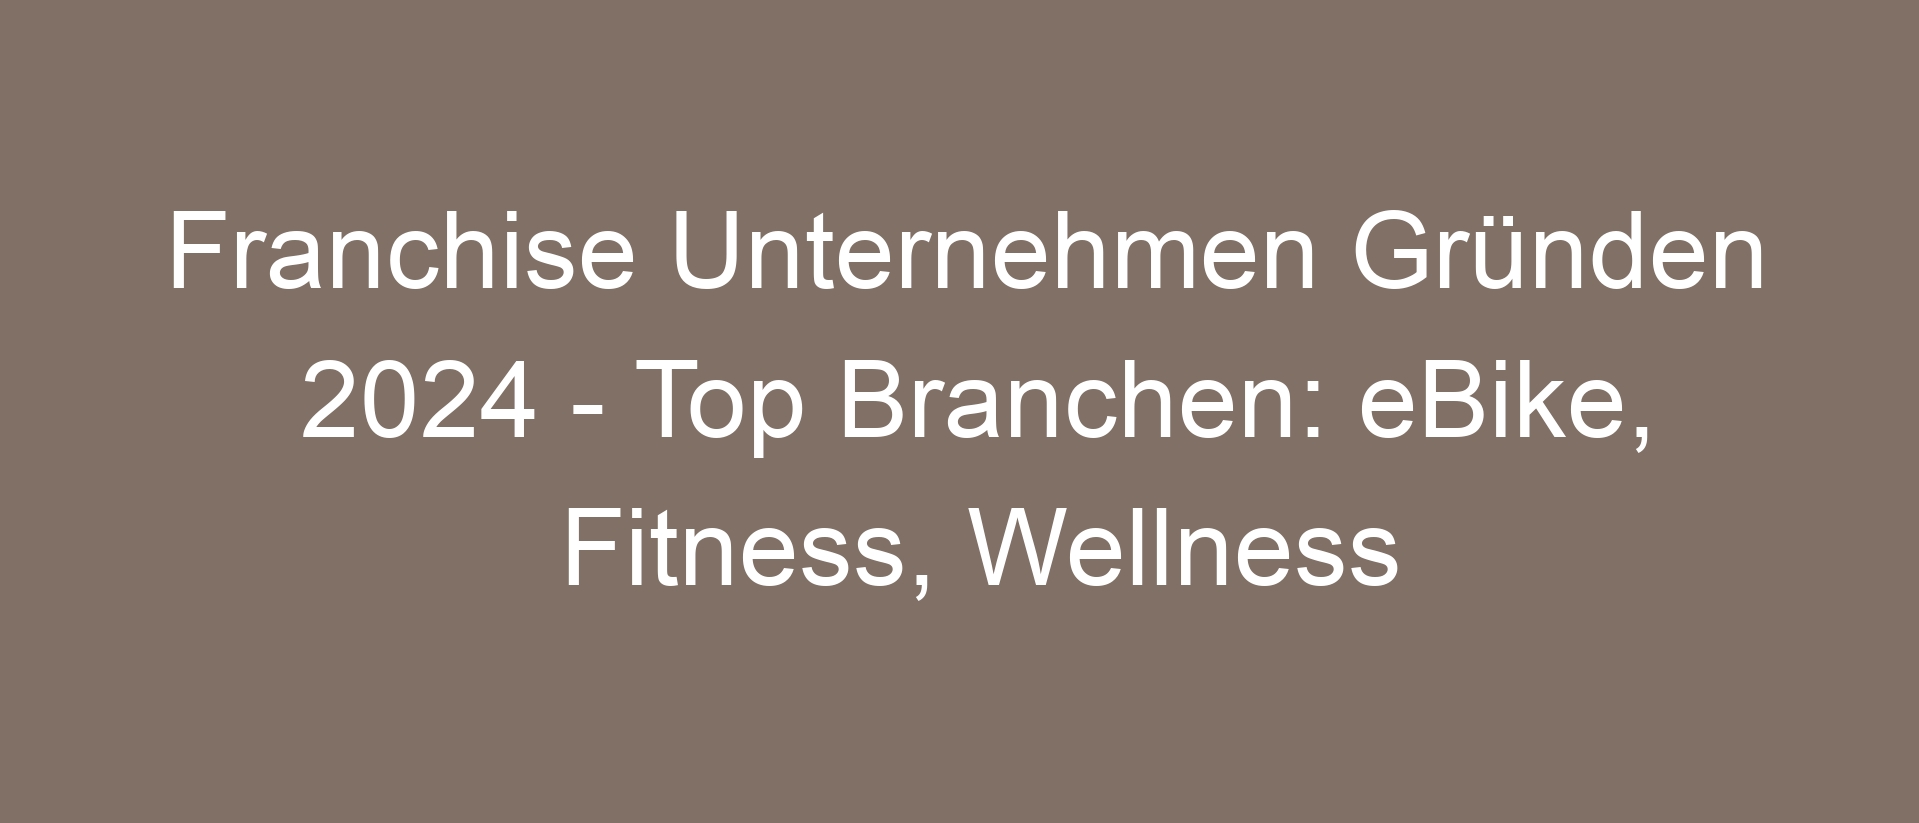 Franchise Unternehmen Gründen 2024 – Top Branchen: eBike, Fitness, Wellness